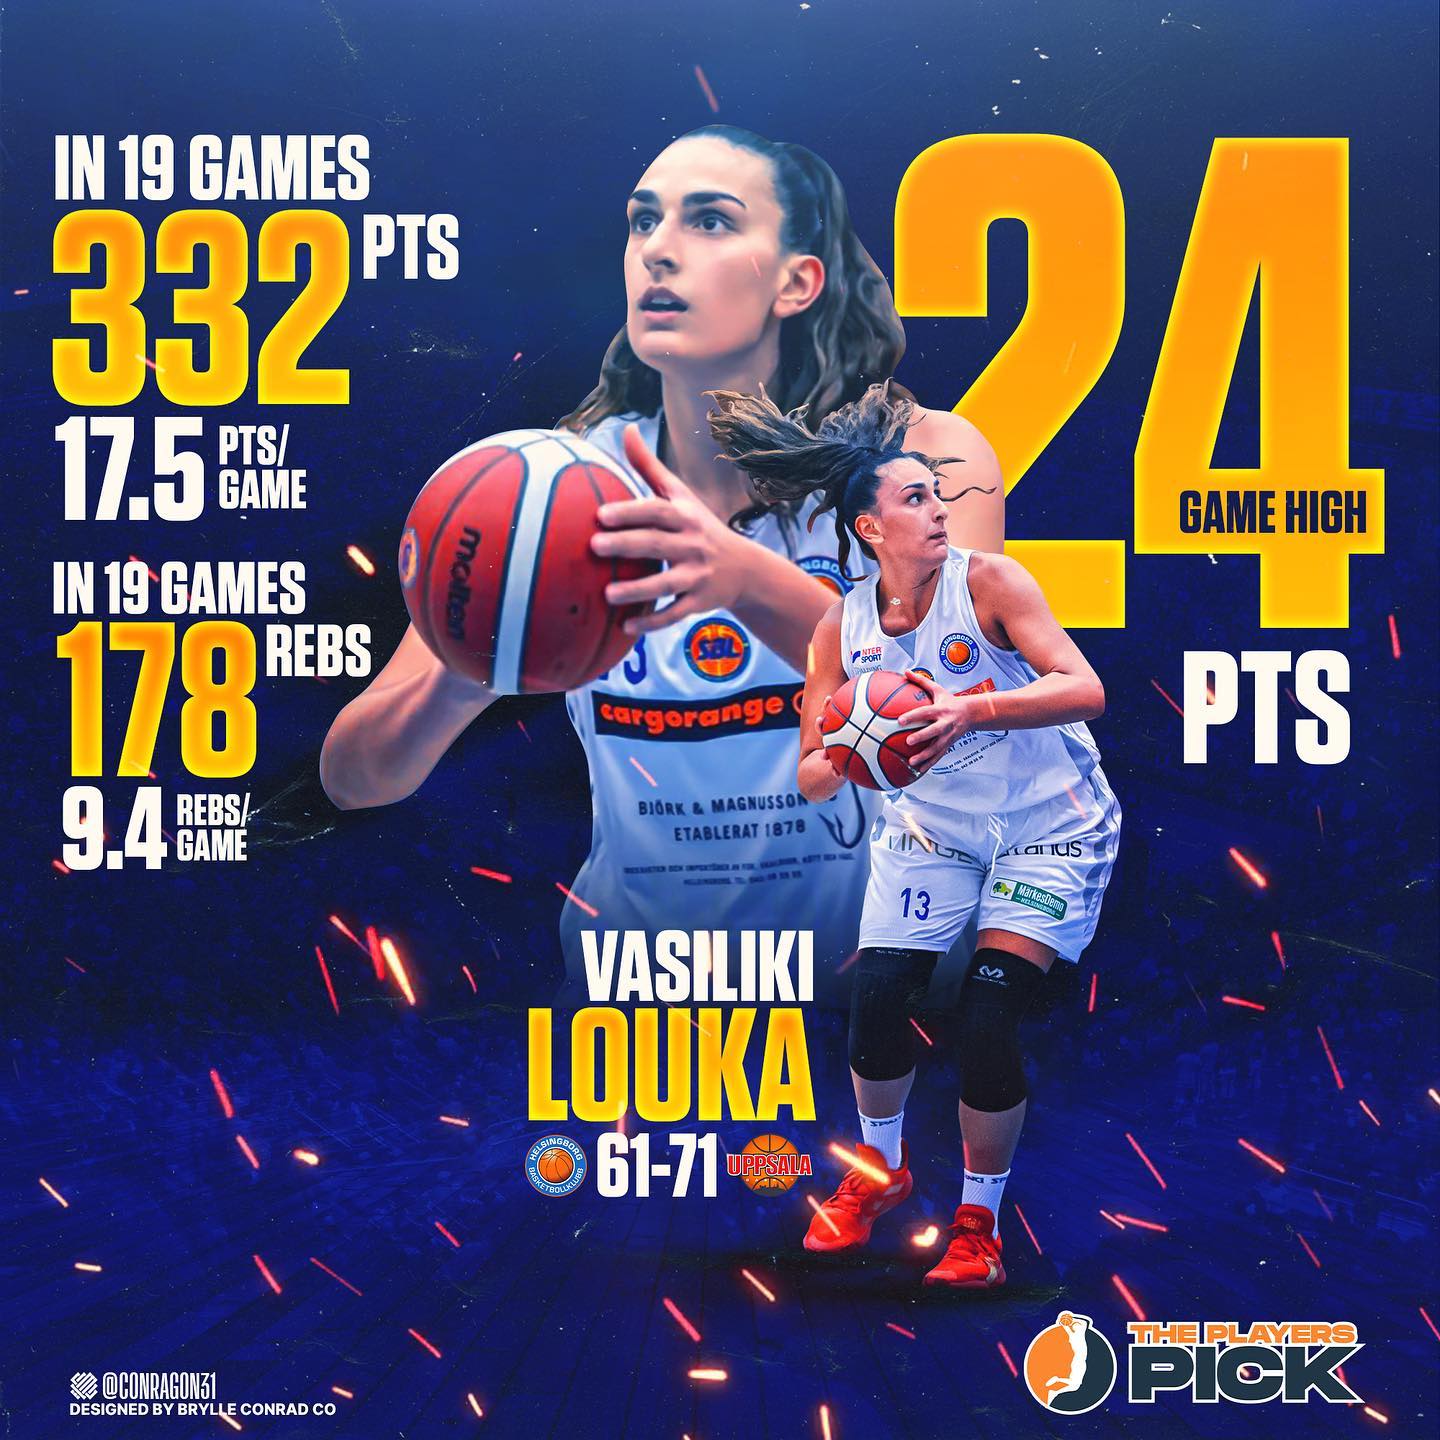 Game High 24 points vs Uppsala for Vasiliki Louka!